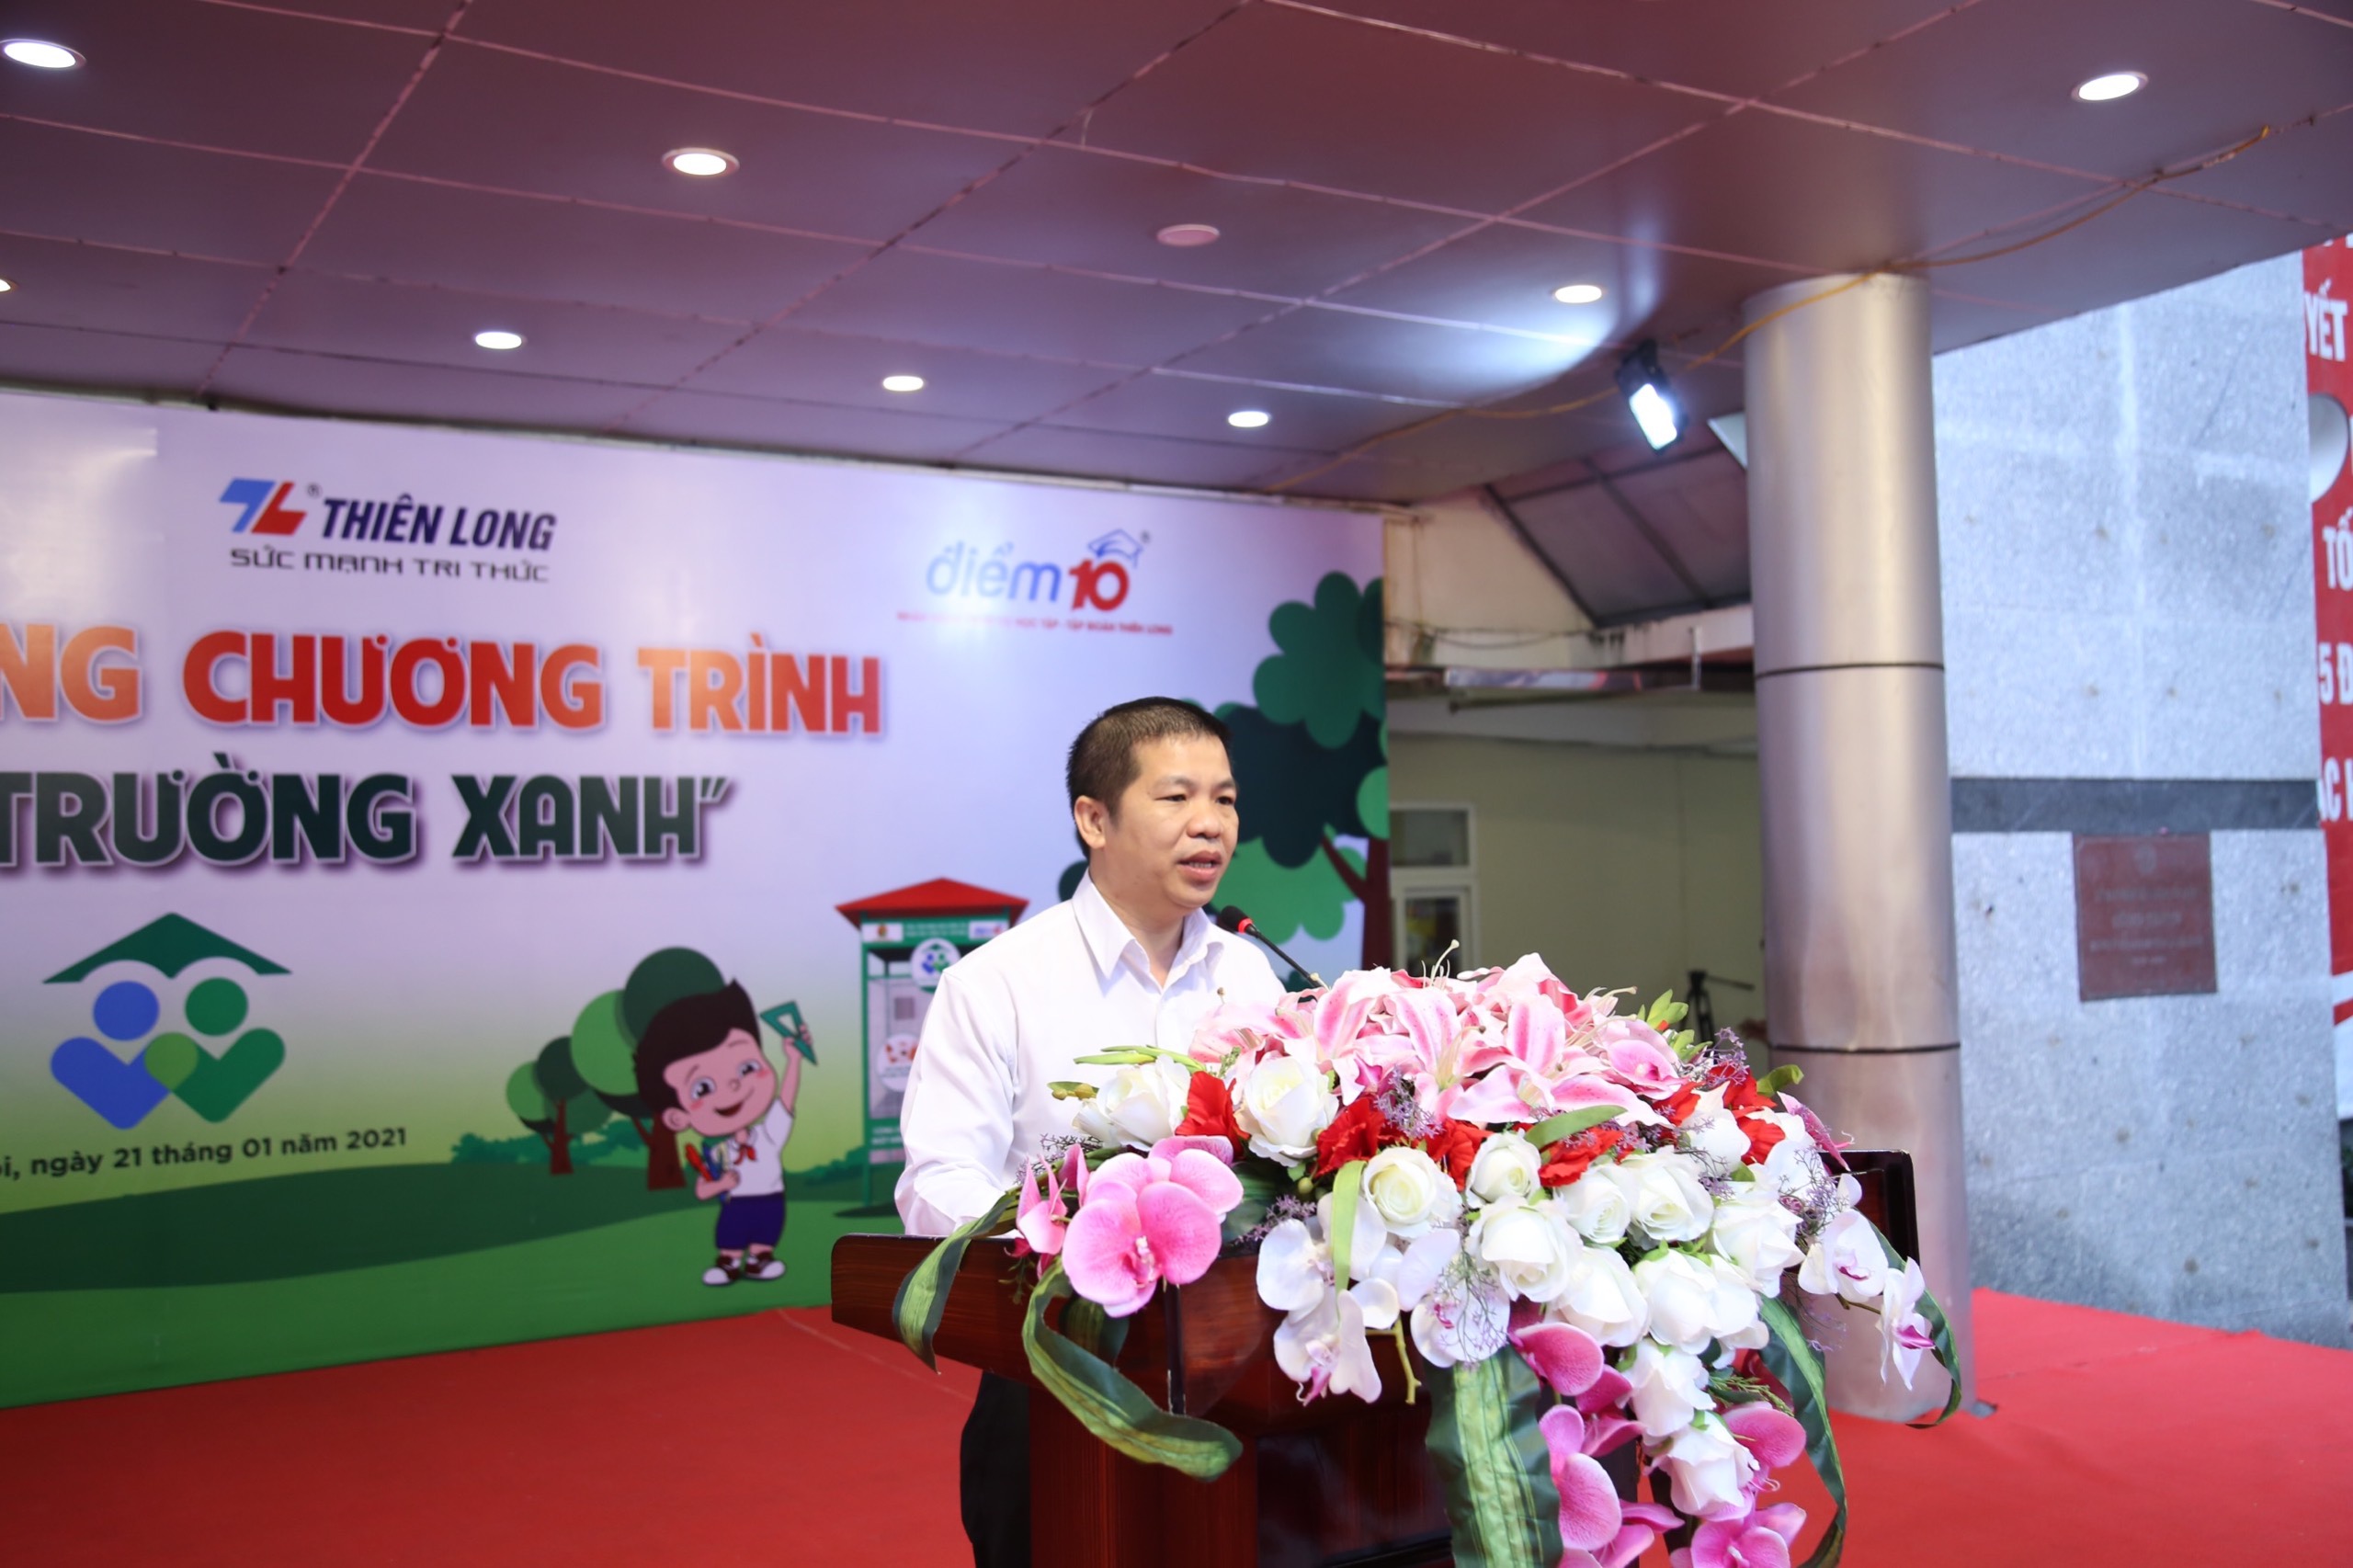 Giám đốc Marketing Tập đoàn Thiên Long Trịnh Văn Hào phát biểu tại Lễ phát động Ảnh: Đức Hiệp